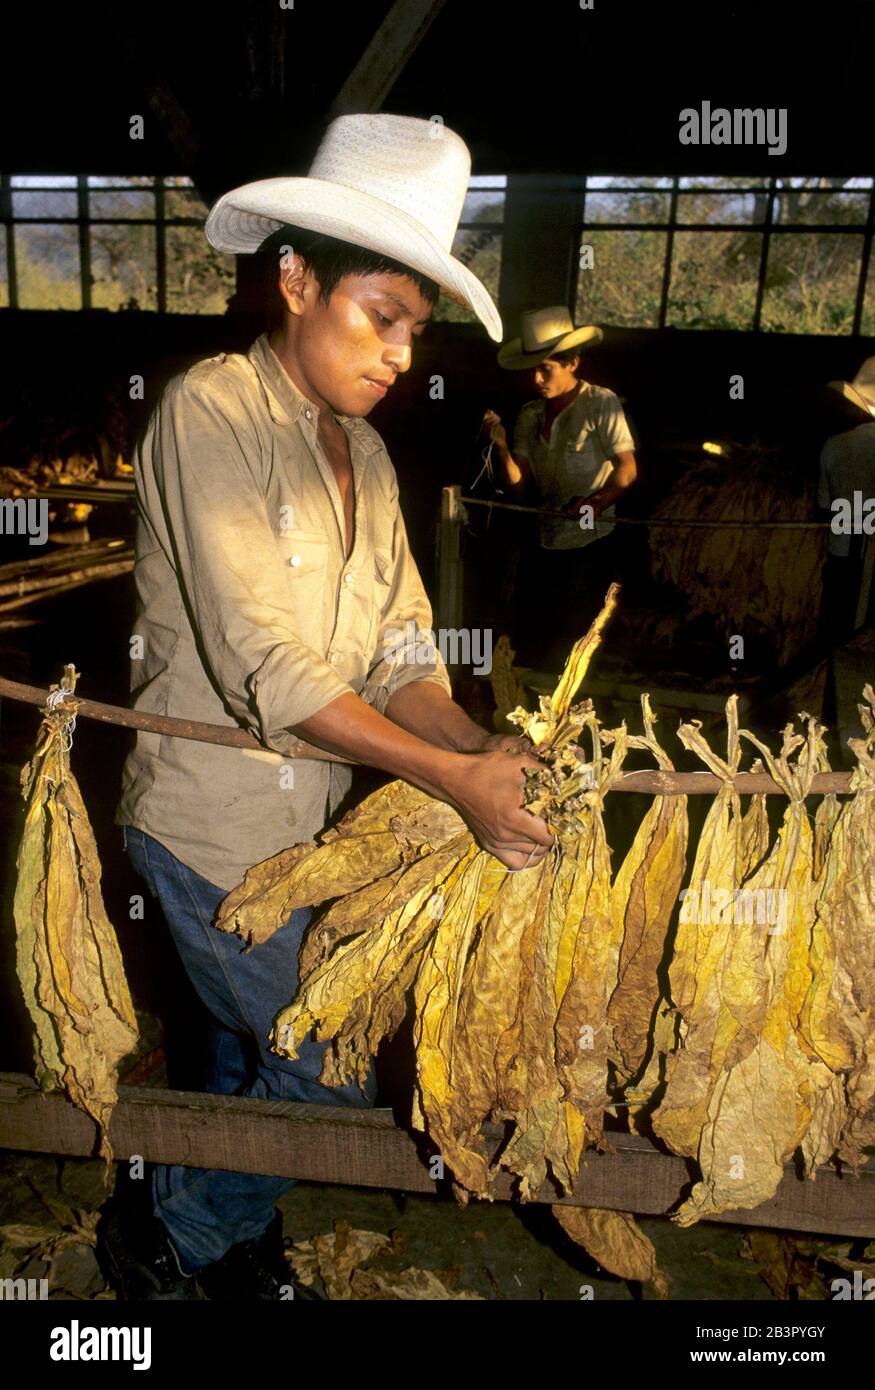 Copan, Honduras, circa 1990: Agricultural worker handles dried tobacco leaves at a tobacco farm. ©Bob Daemmrich Stock Photo